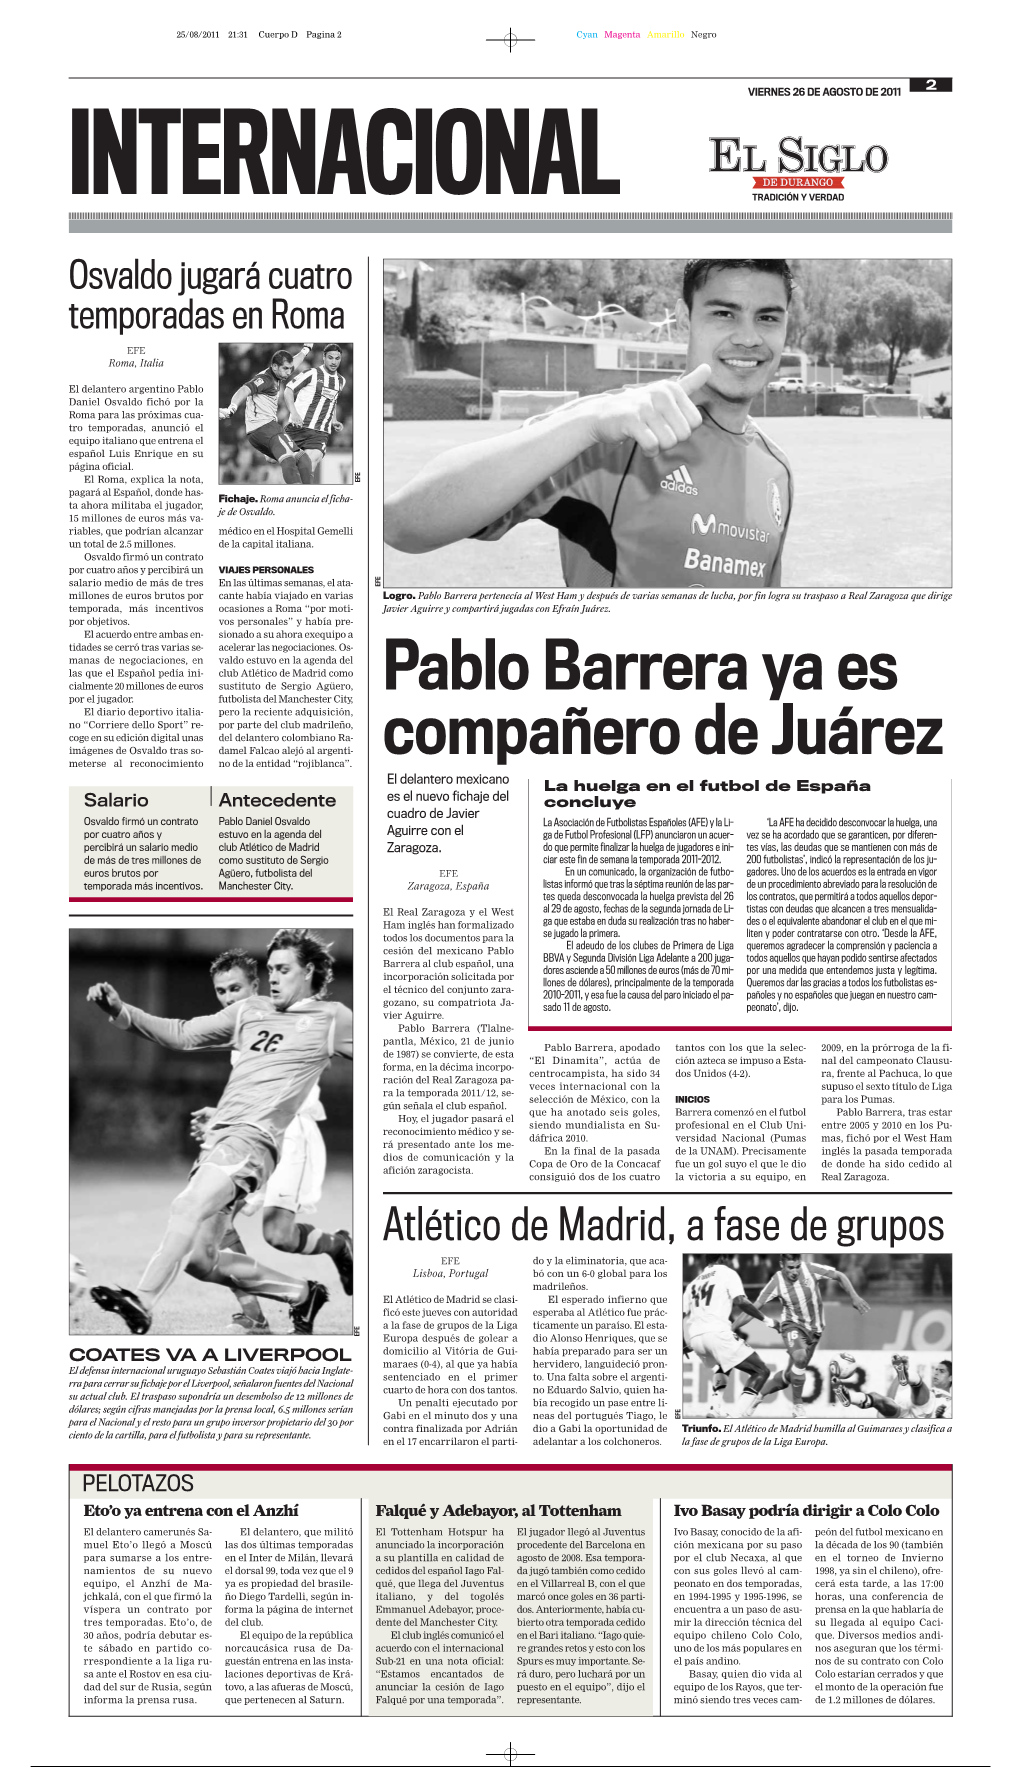 Pablo Barrera Ya Es Compañero De Juárez